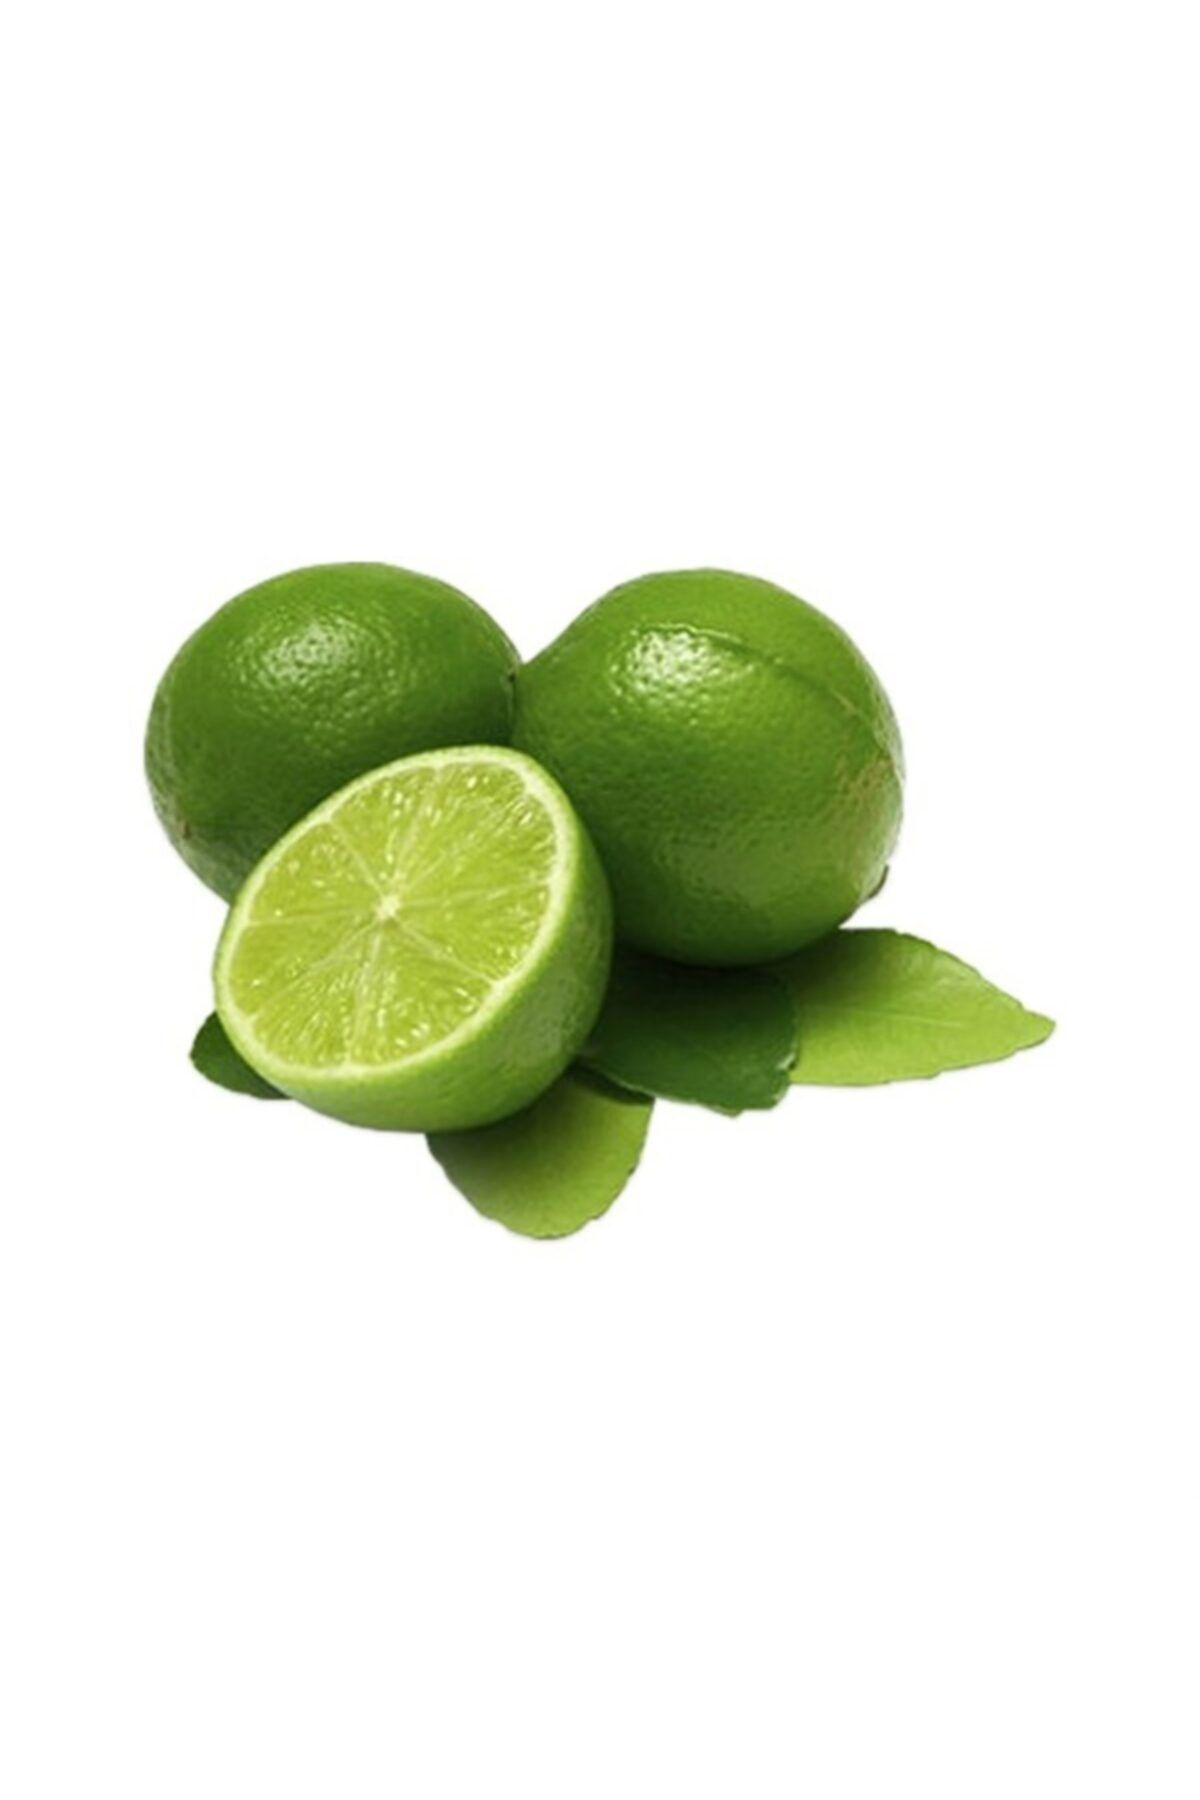 Sebze Meyve Dünyası Lime Misket Limon 500 gr